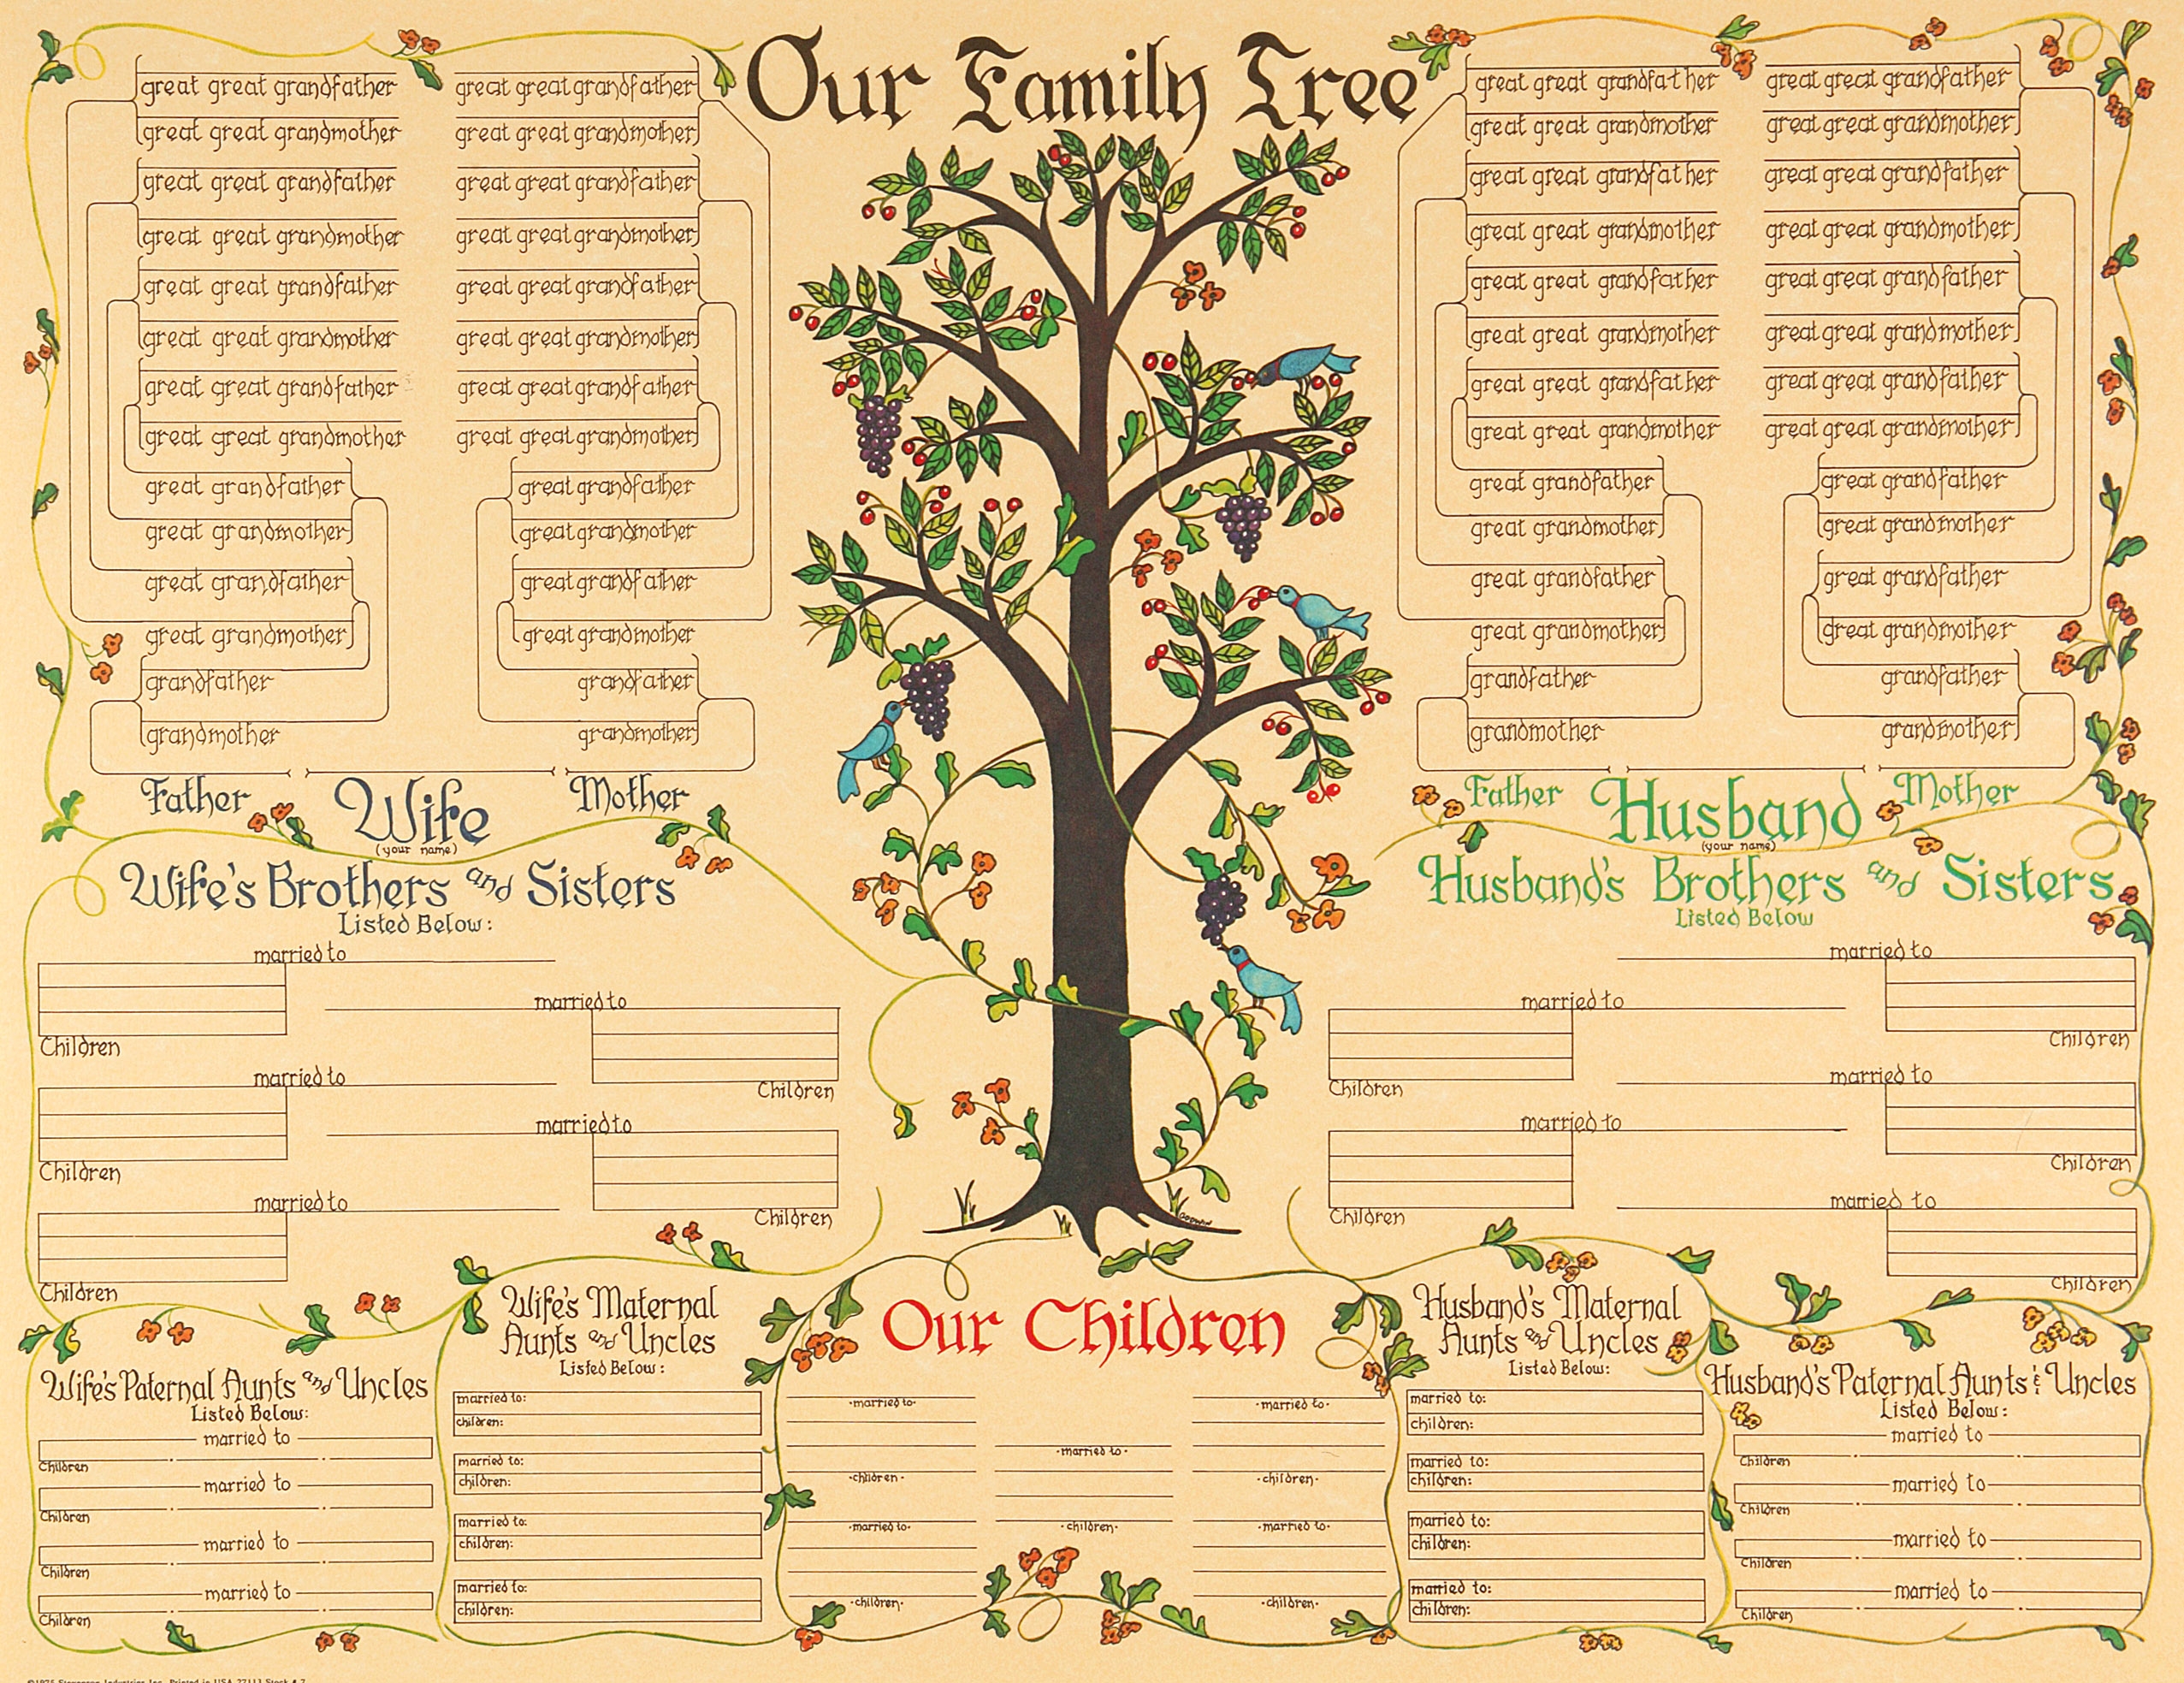 Family Tree vines